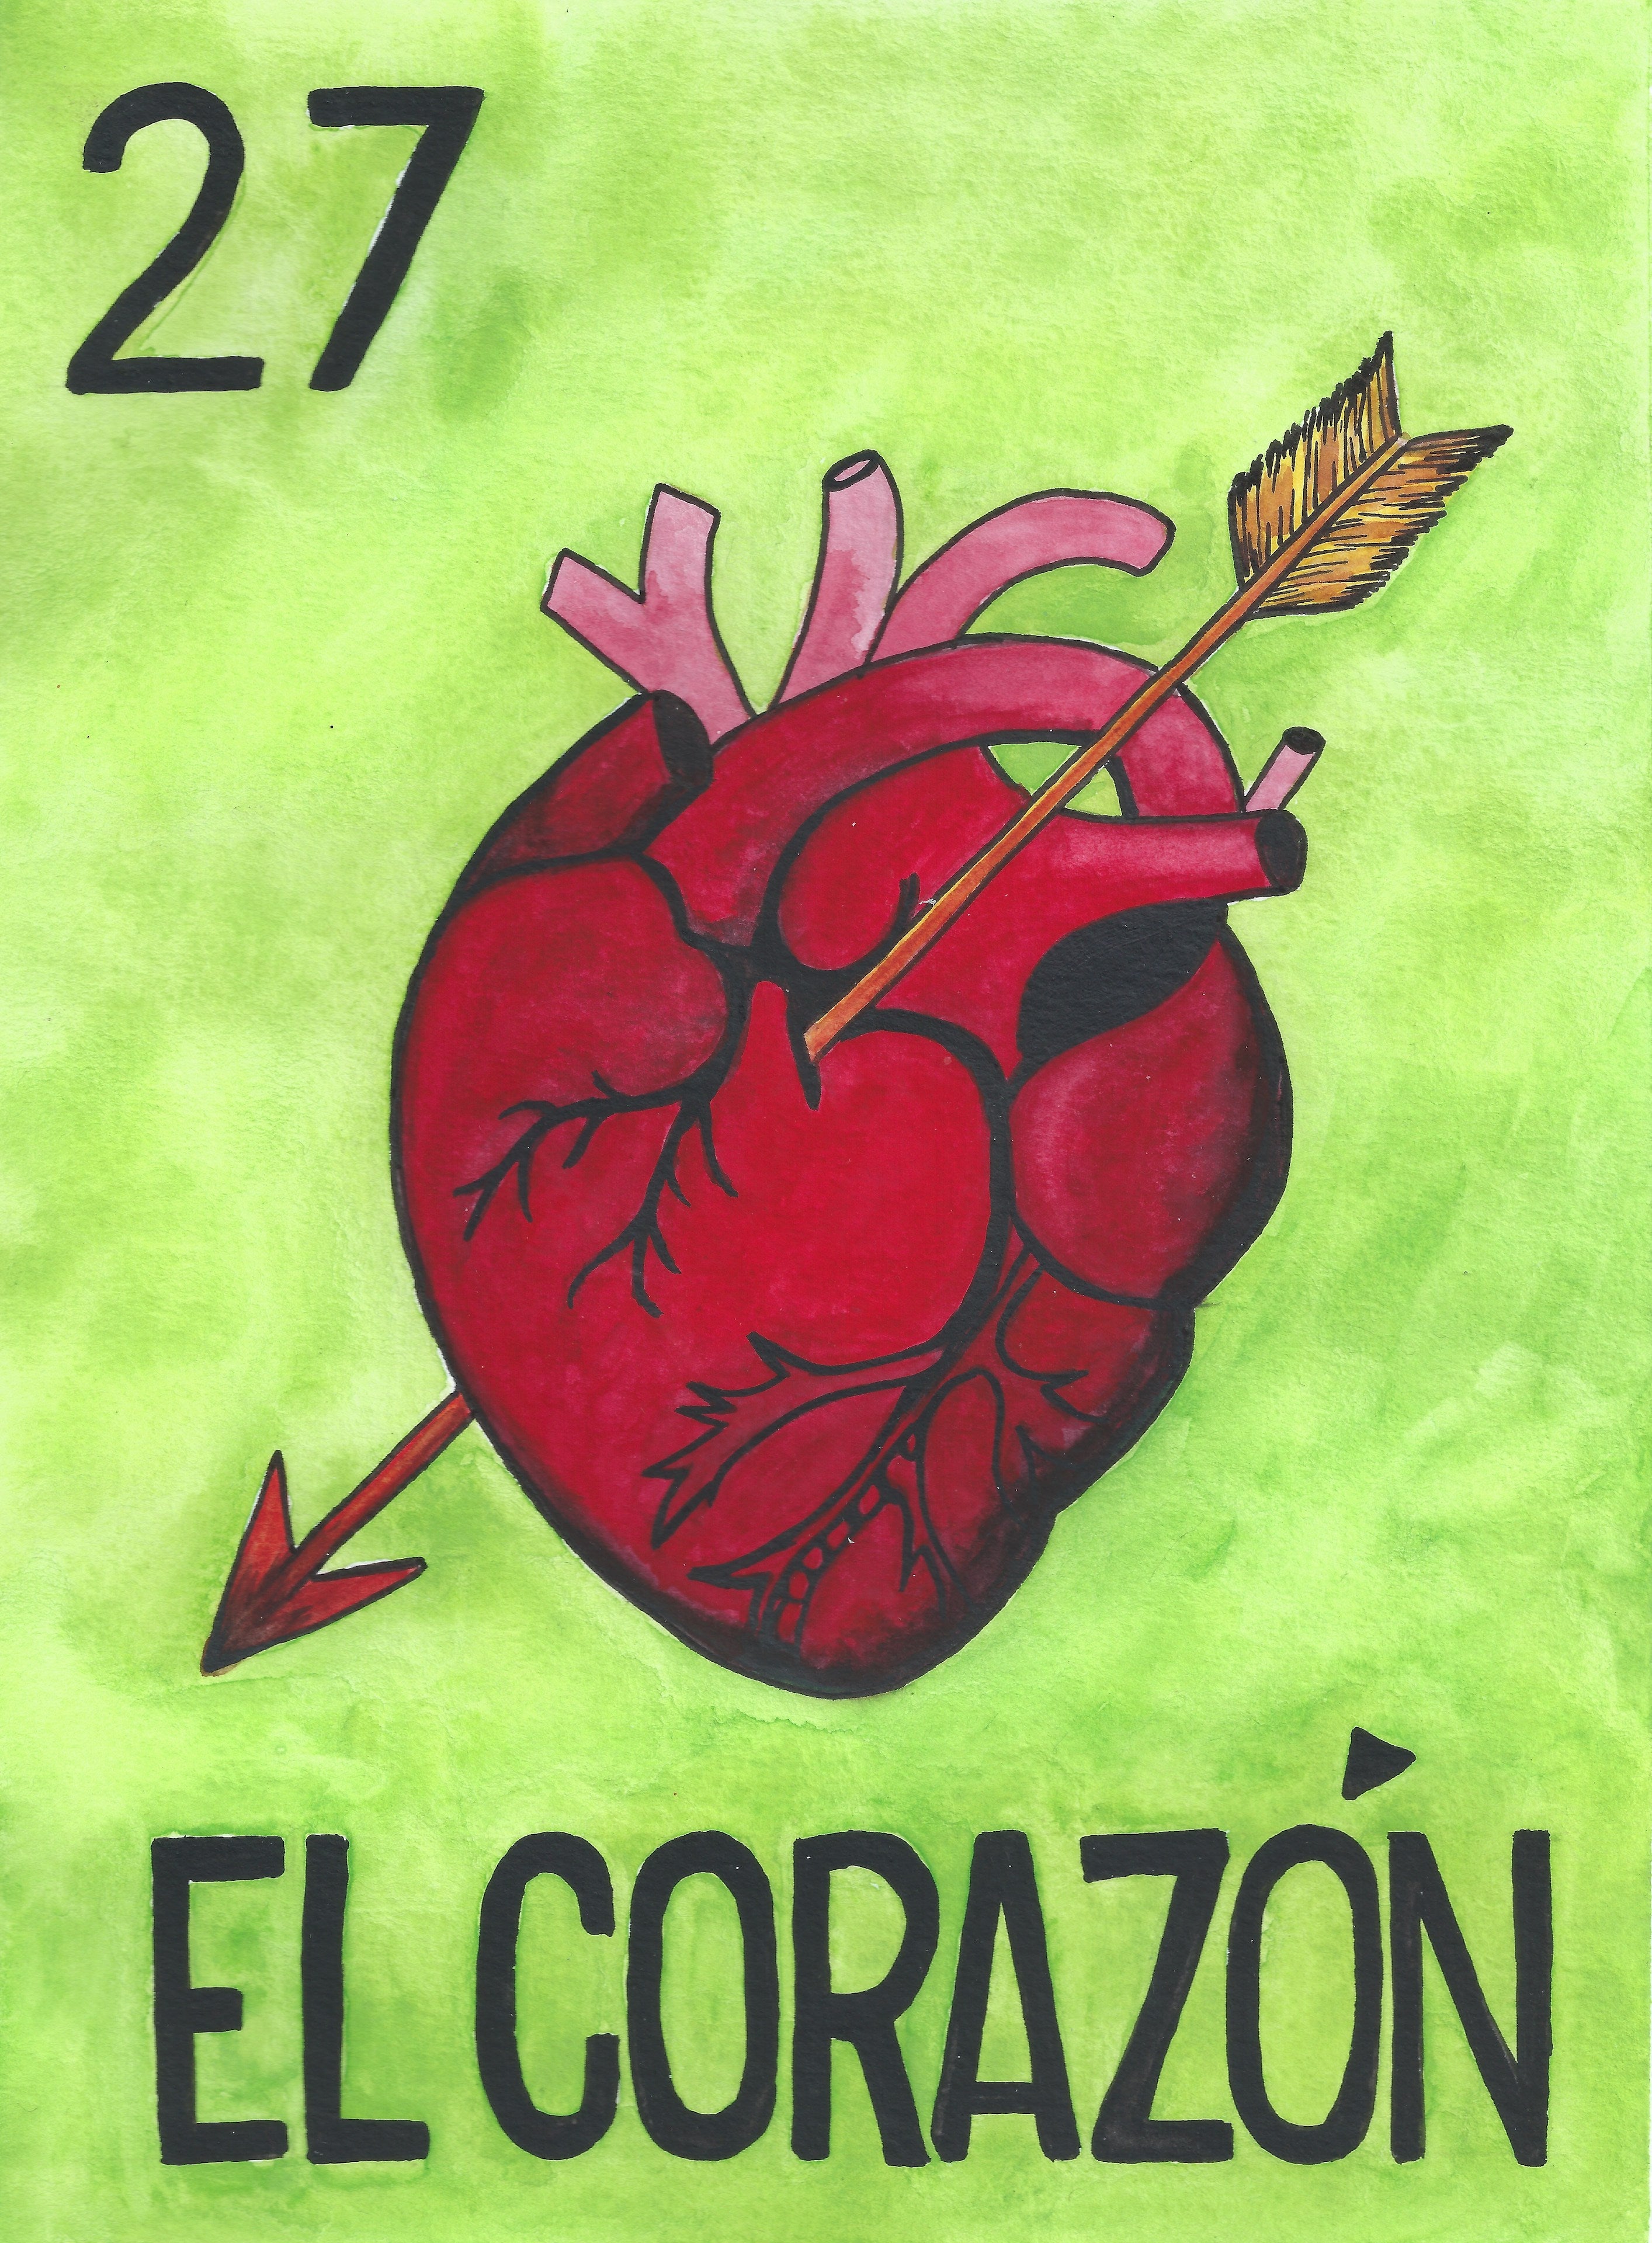 El Corazon Print